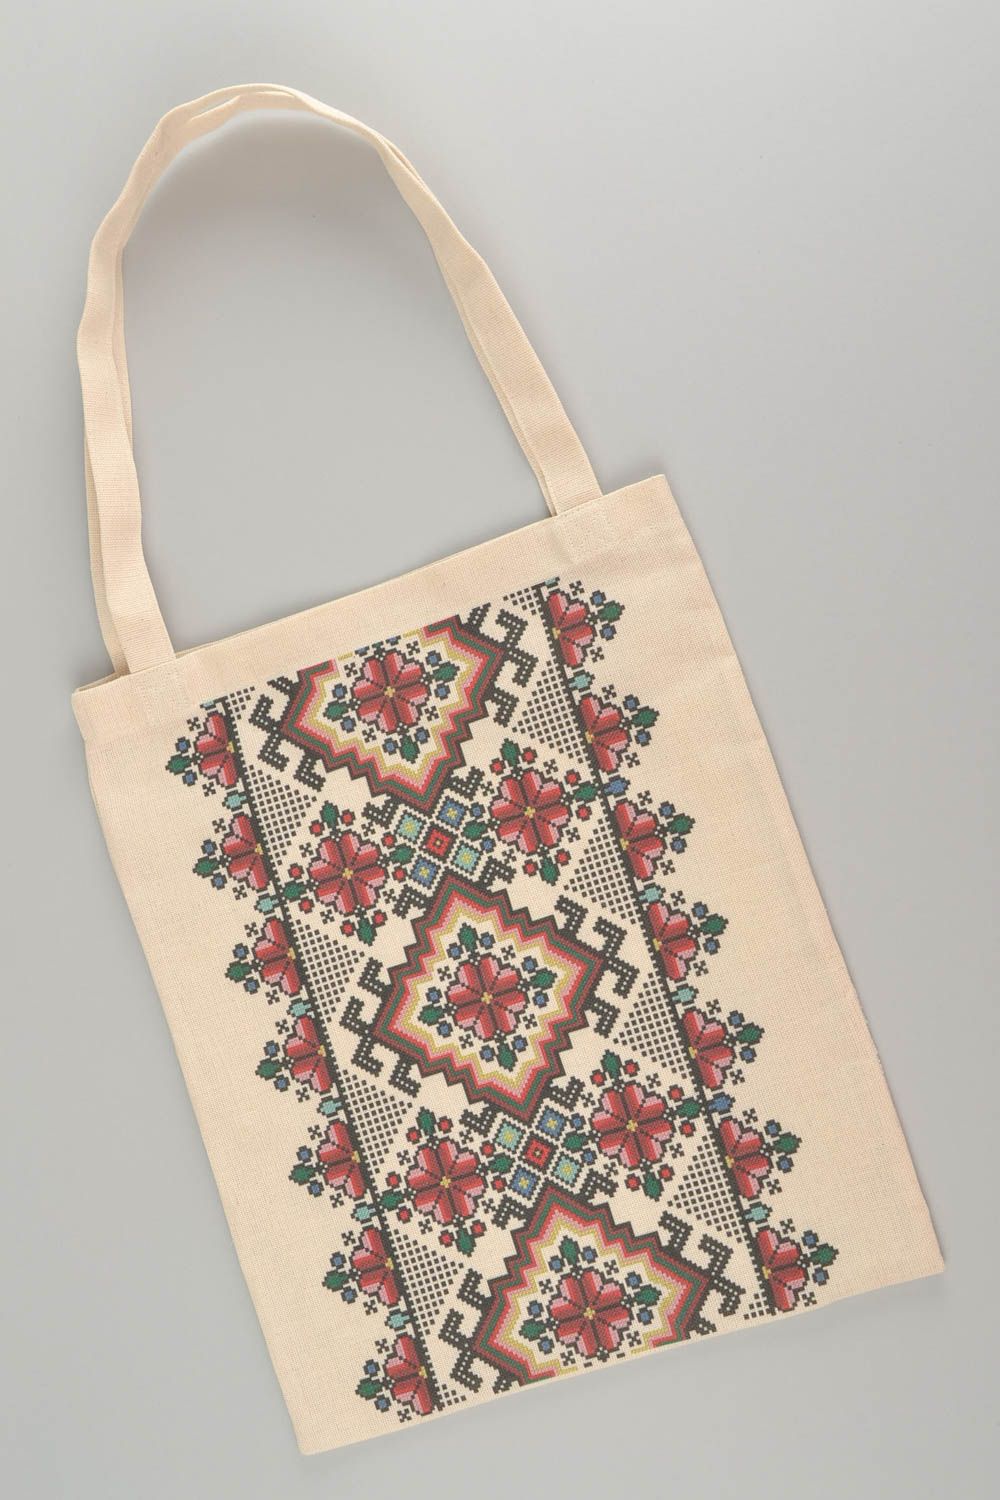 Женская сумка из ткани с принтом ручной работы авторская красивая в эко стиле фото 3